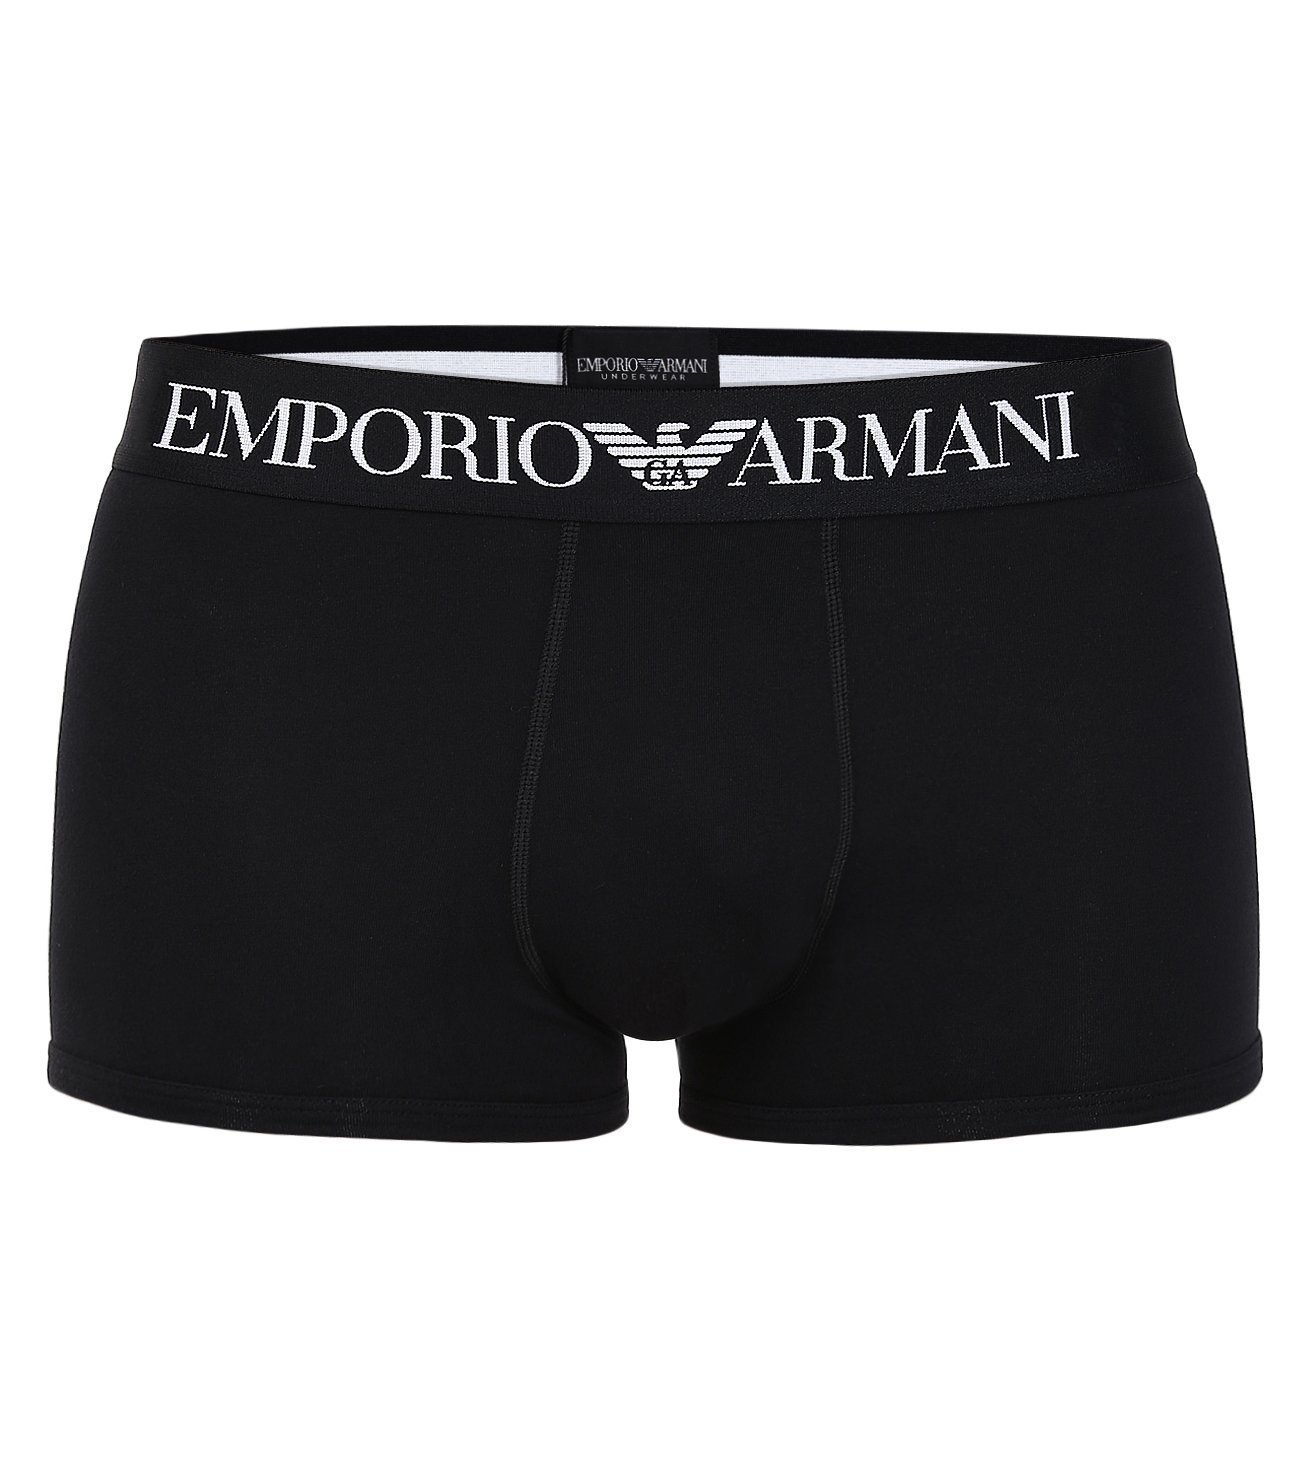 Buy Emporio Armani Black Trunk For Men 